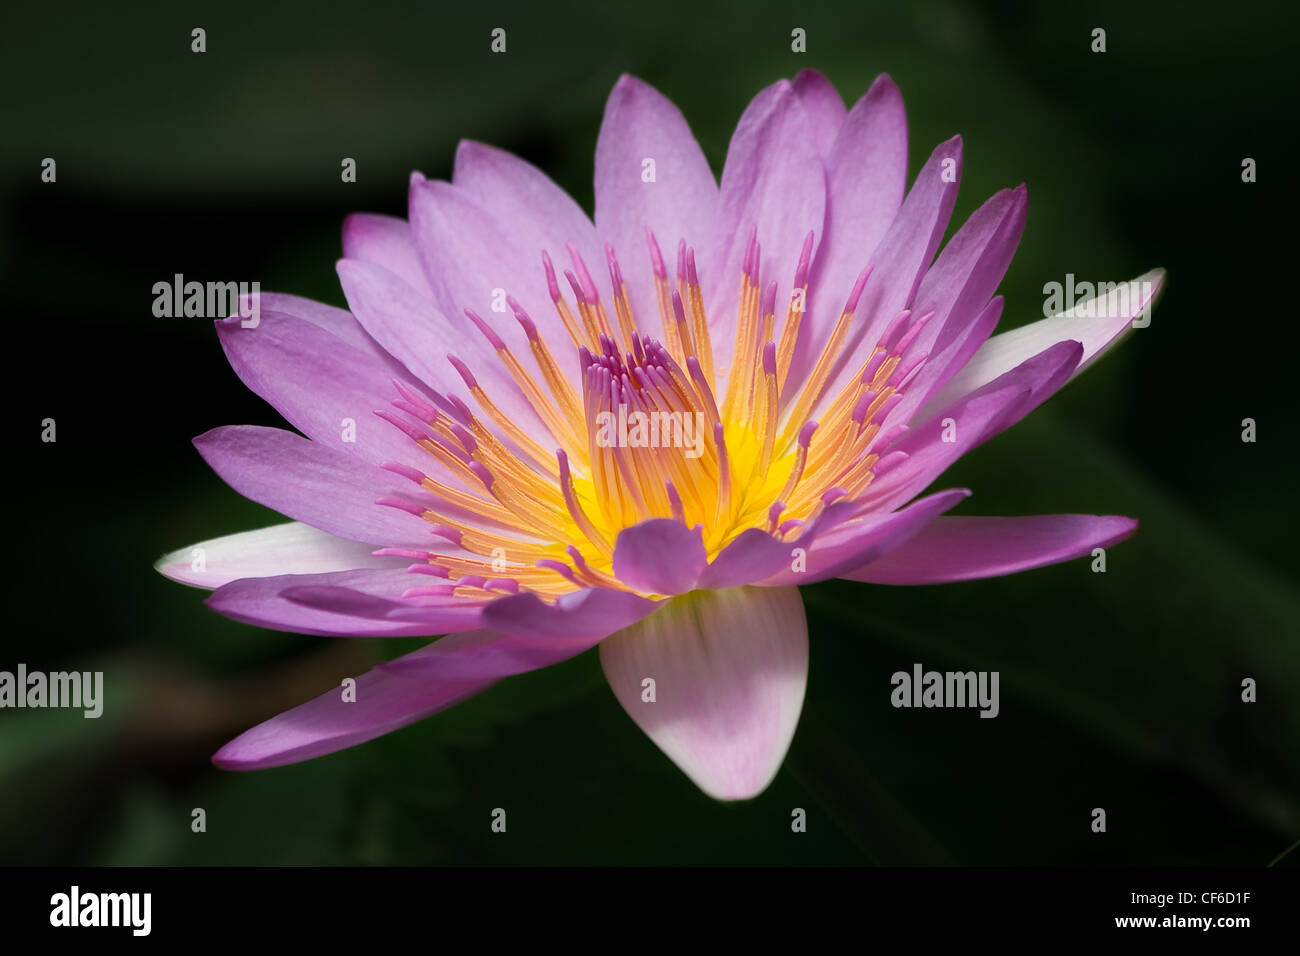 Horizontale Closeup Bild der schönen lila Seerose auf schwarzem Hintergrund. Stockfoto